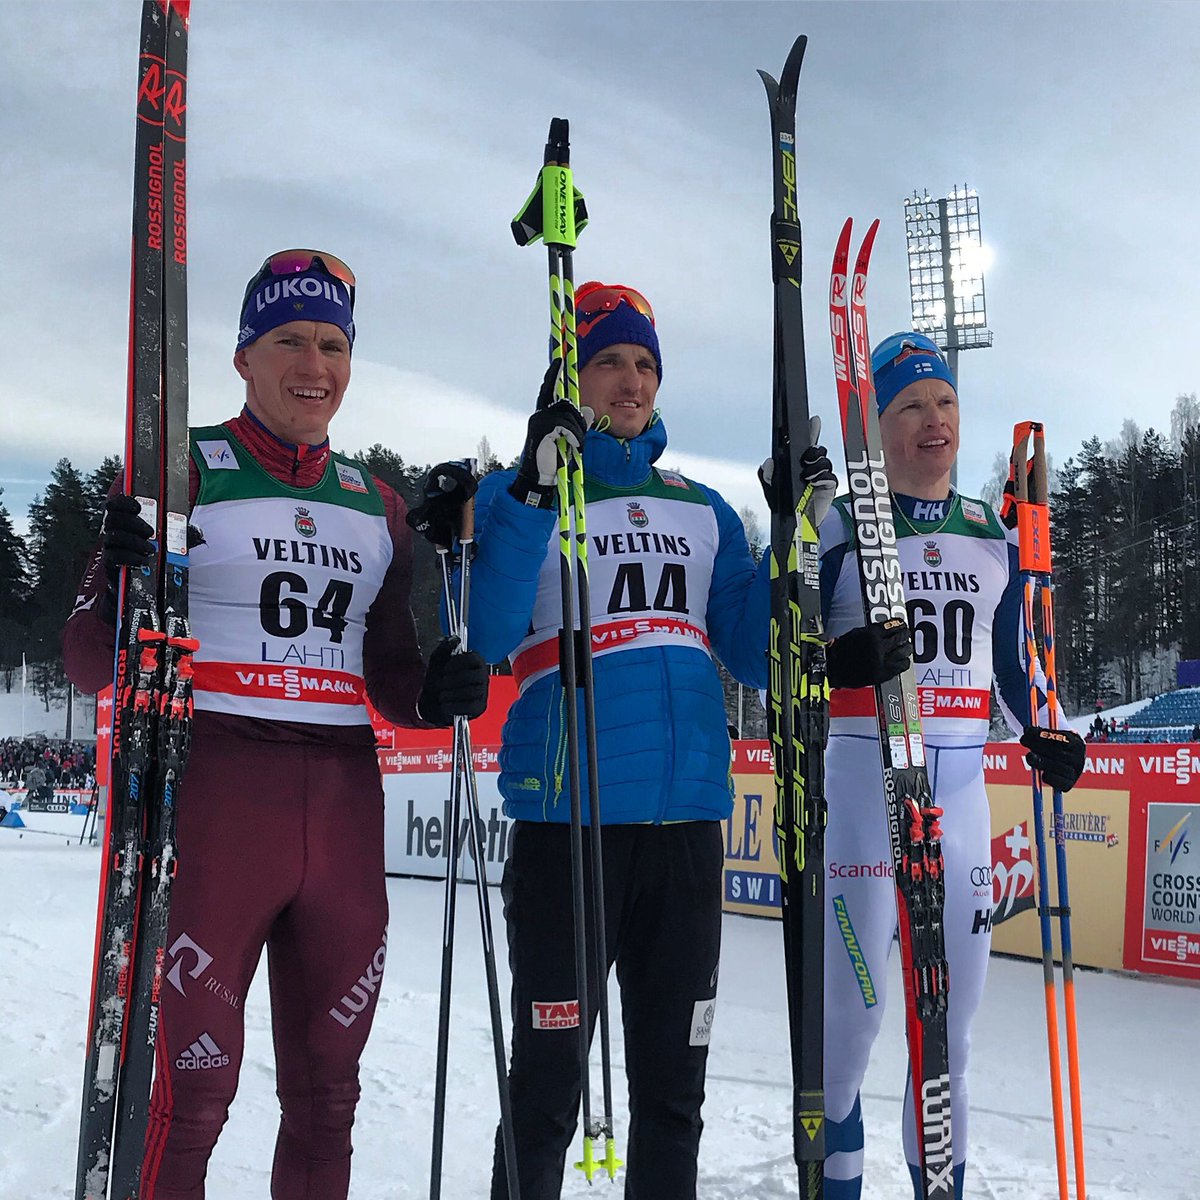 Sunday Rundown: Pärmäkoski Wins At Home in Lahti 10 k; Poltoranin Tops 15 k